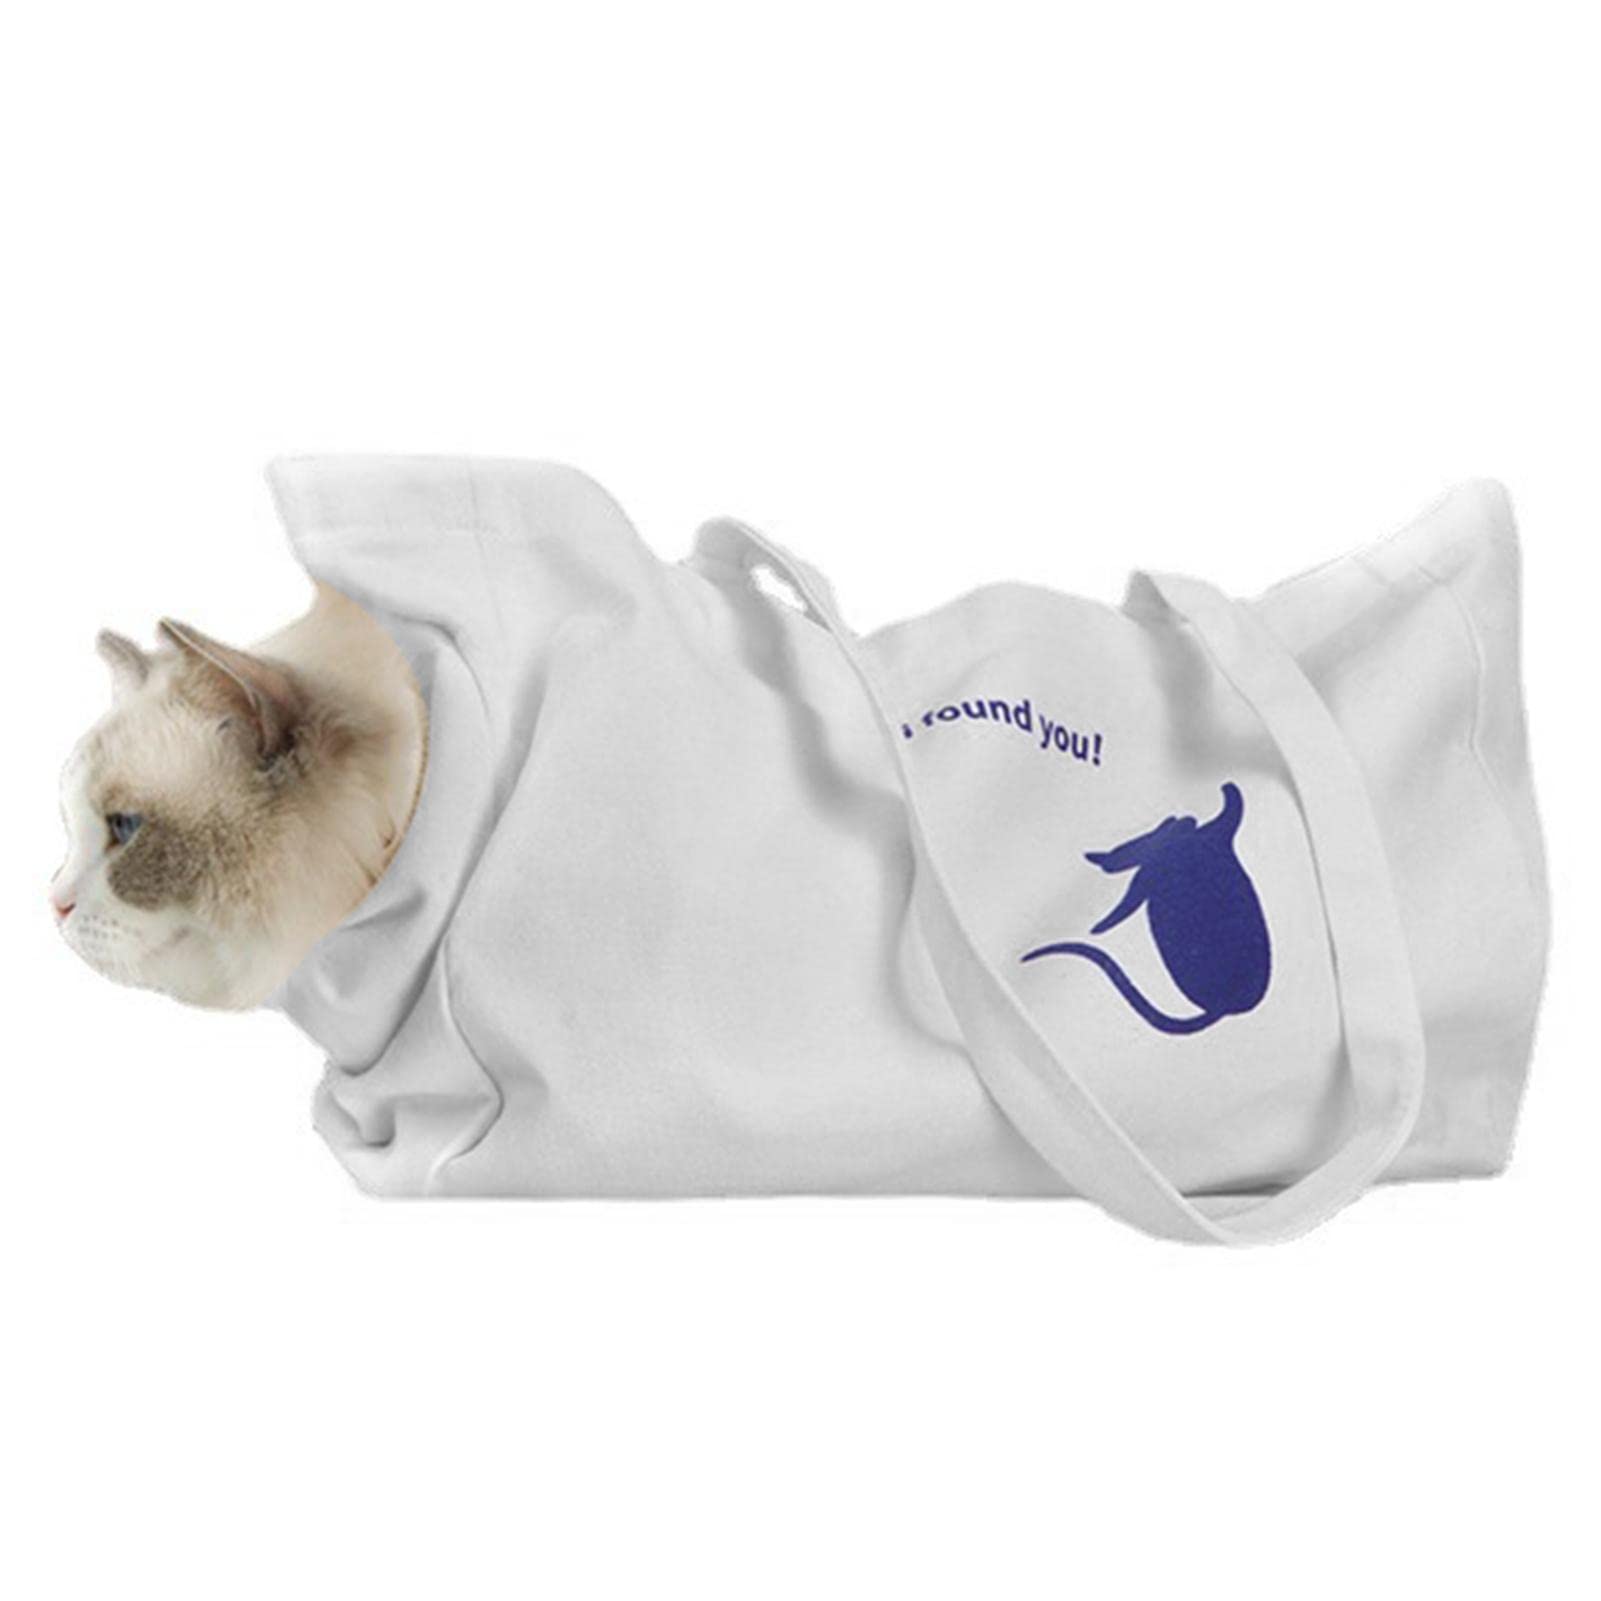 Abbto 2 Pcs Haustiere Tote Umhängetaschen, Colorfast Canvas Hundetragetaschen für Welpen Kätzchen, Schulterrucksack für Hunde und Katzen zum Wandern, Radfahren und Reisen